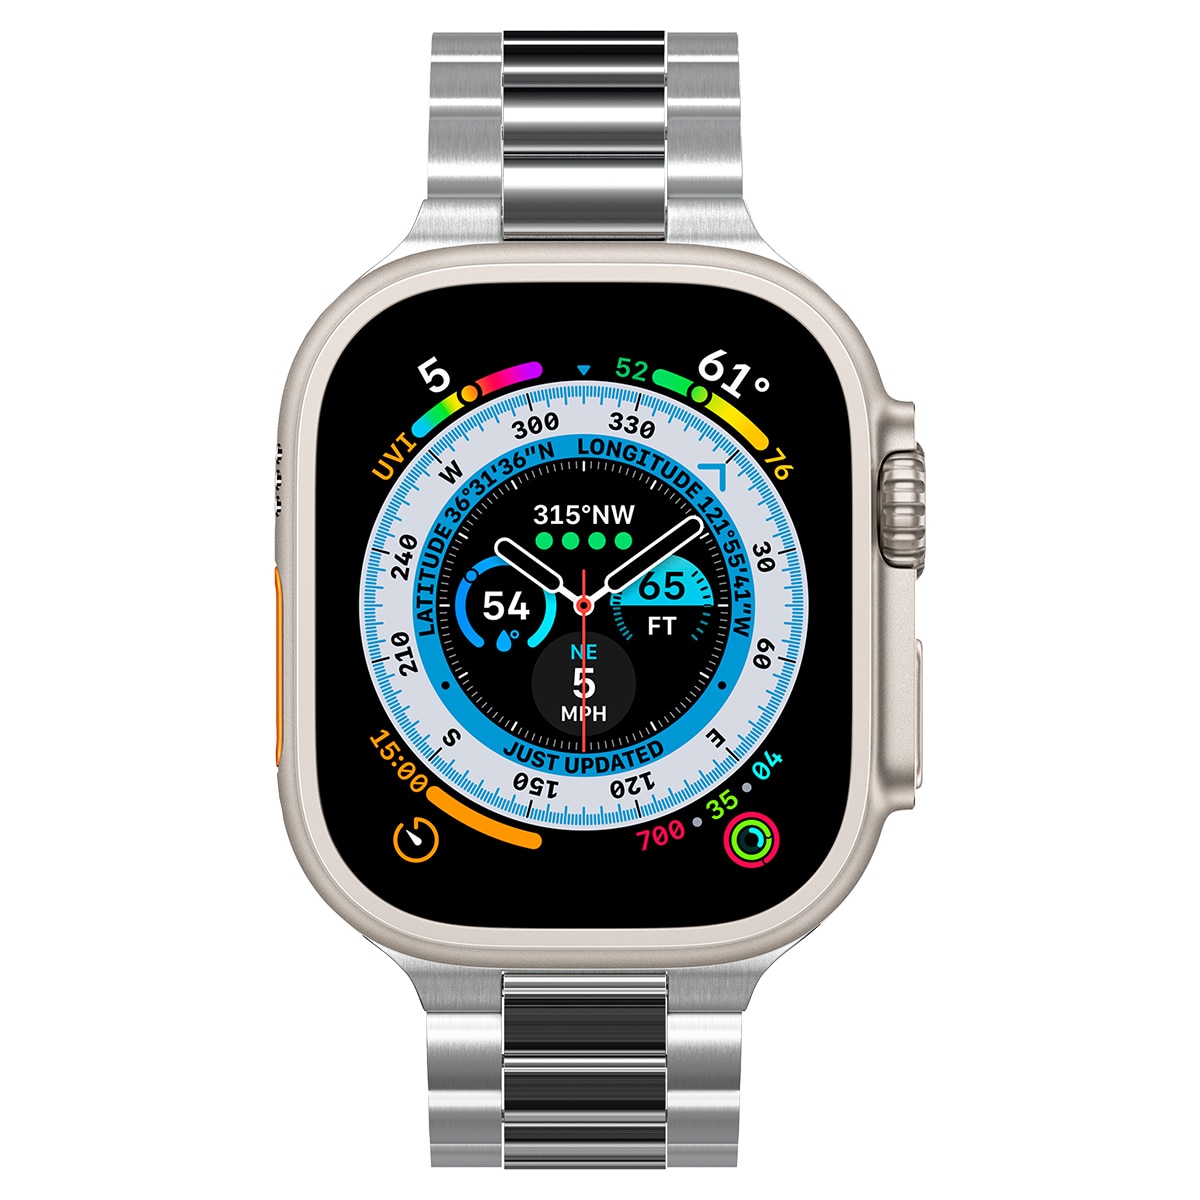 Bandje Modern Fit 316L Apple Watch 42mm Zilver